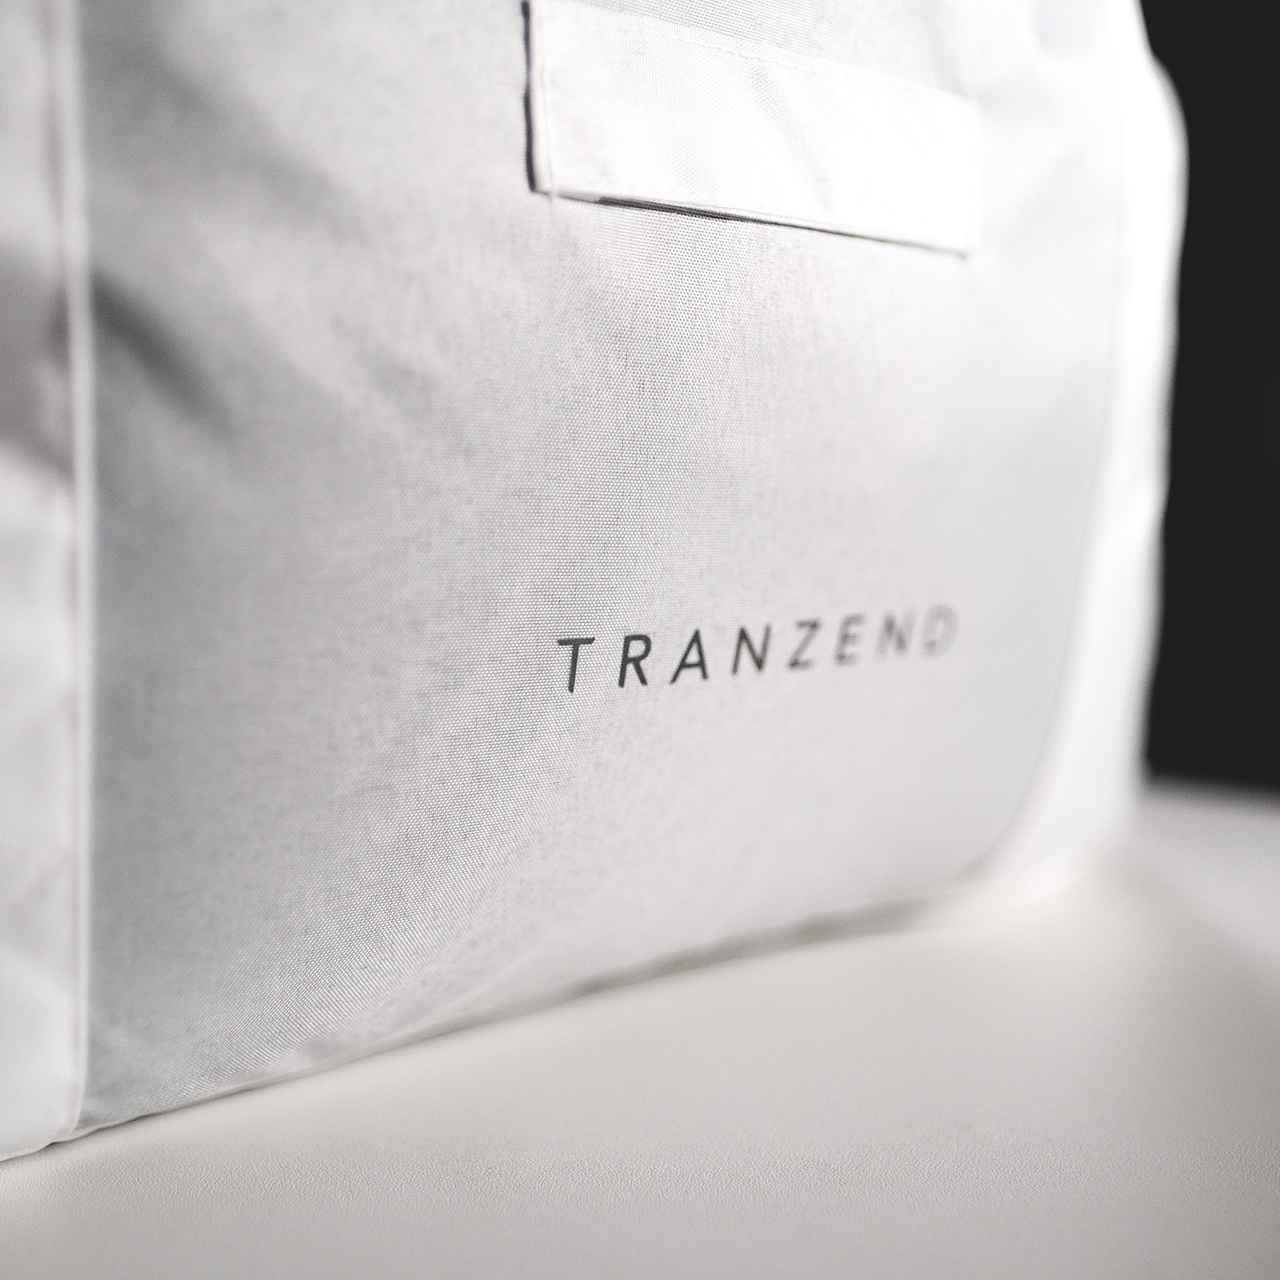 TRANZEND,生活選物,配件,包款品牌,台灣品牌,台灣包款品牌,配件品牌,包款品牌